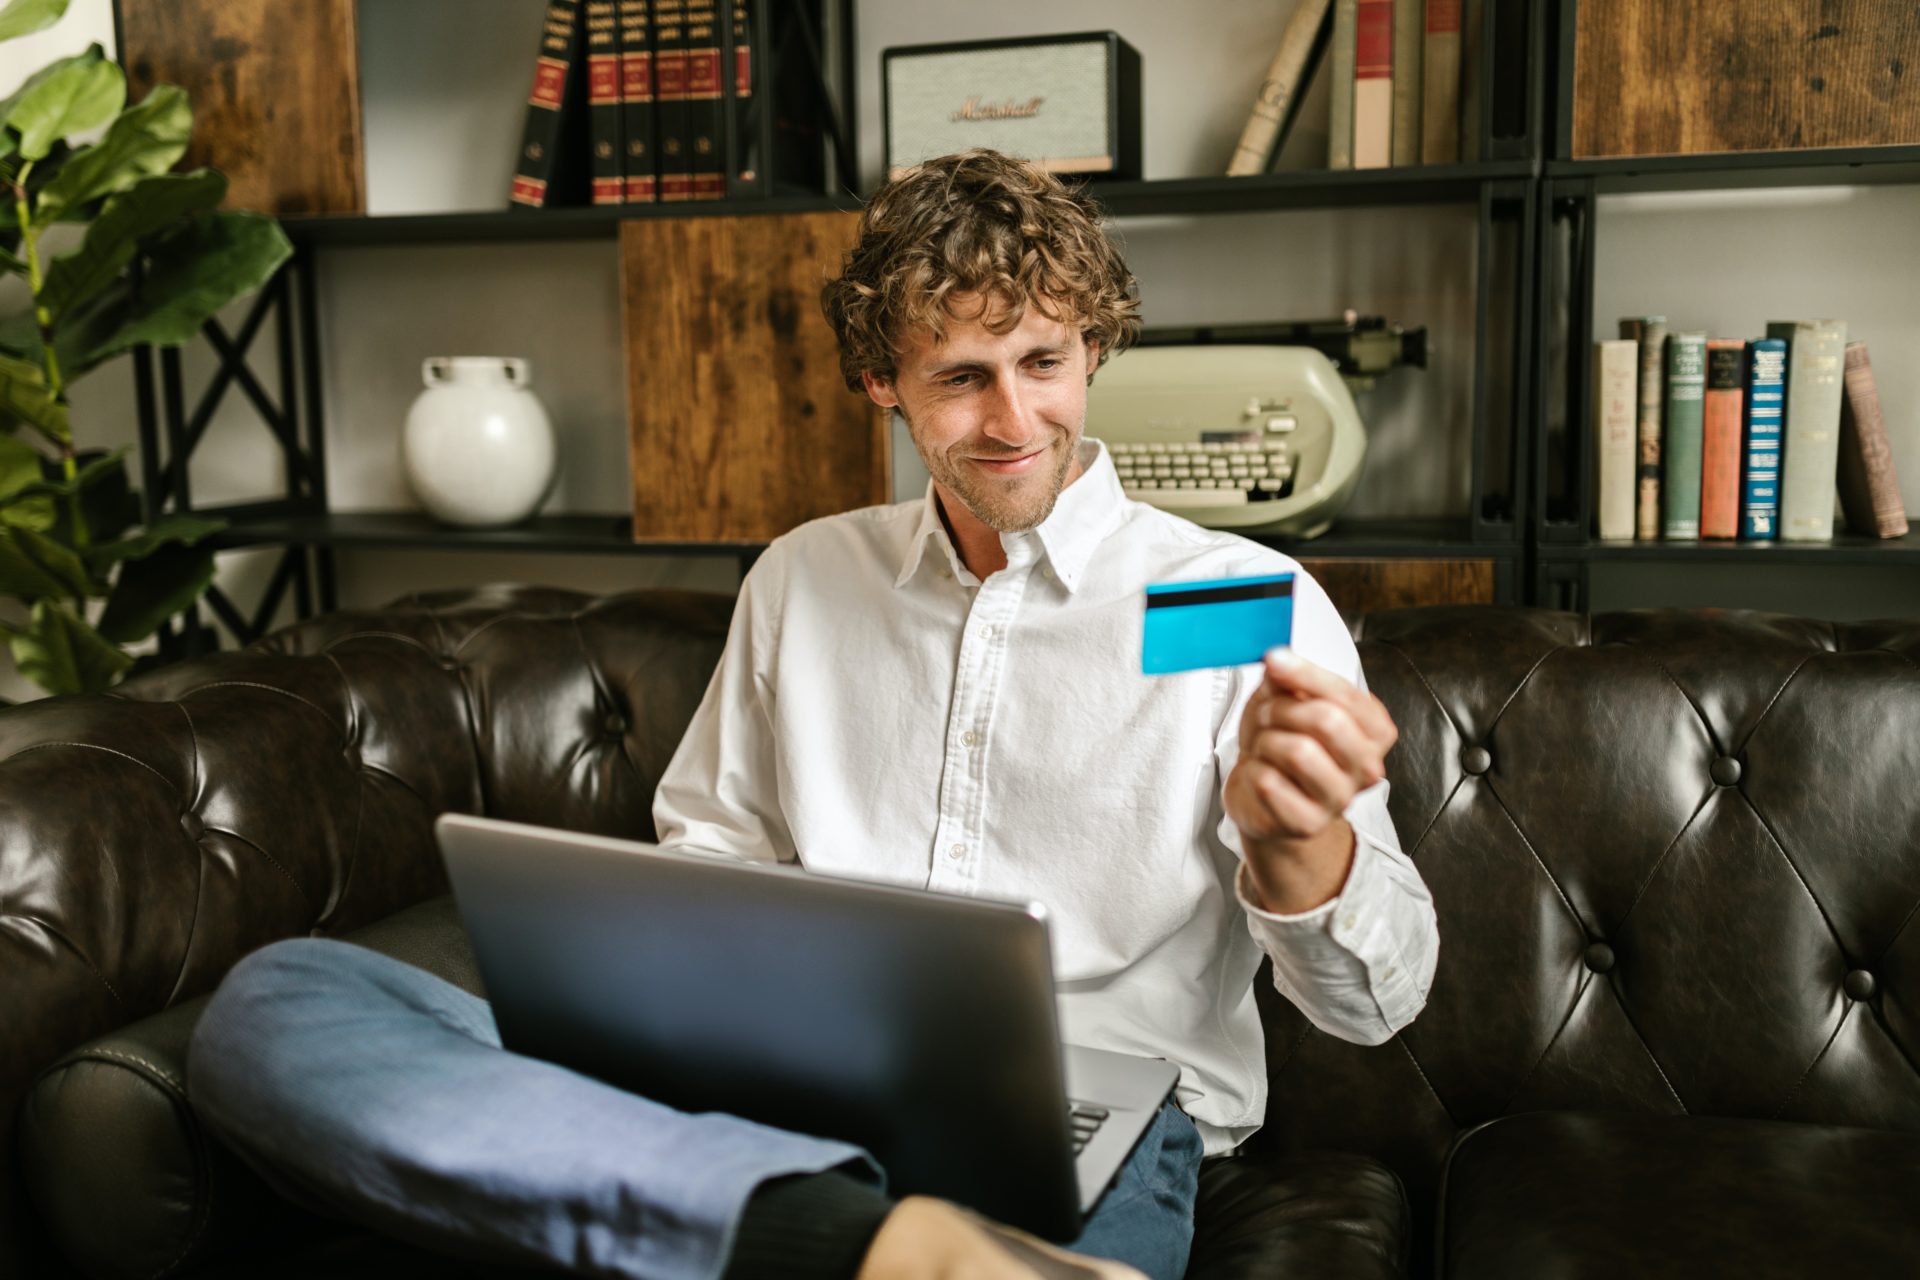 homme avec un ordinateur portable sur ses genoux est assis et sourit en regardant sa carte de banque qju'il tient dans sa main gauche